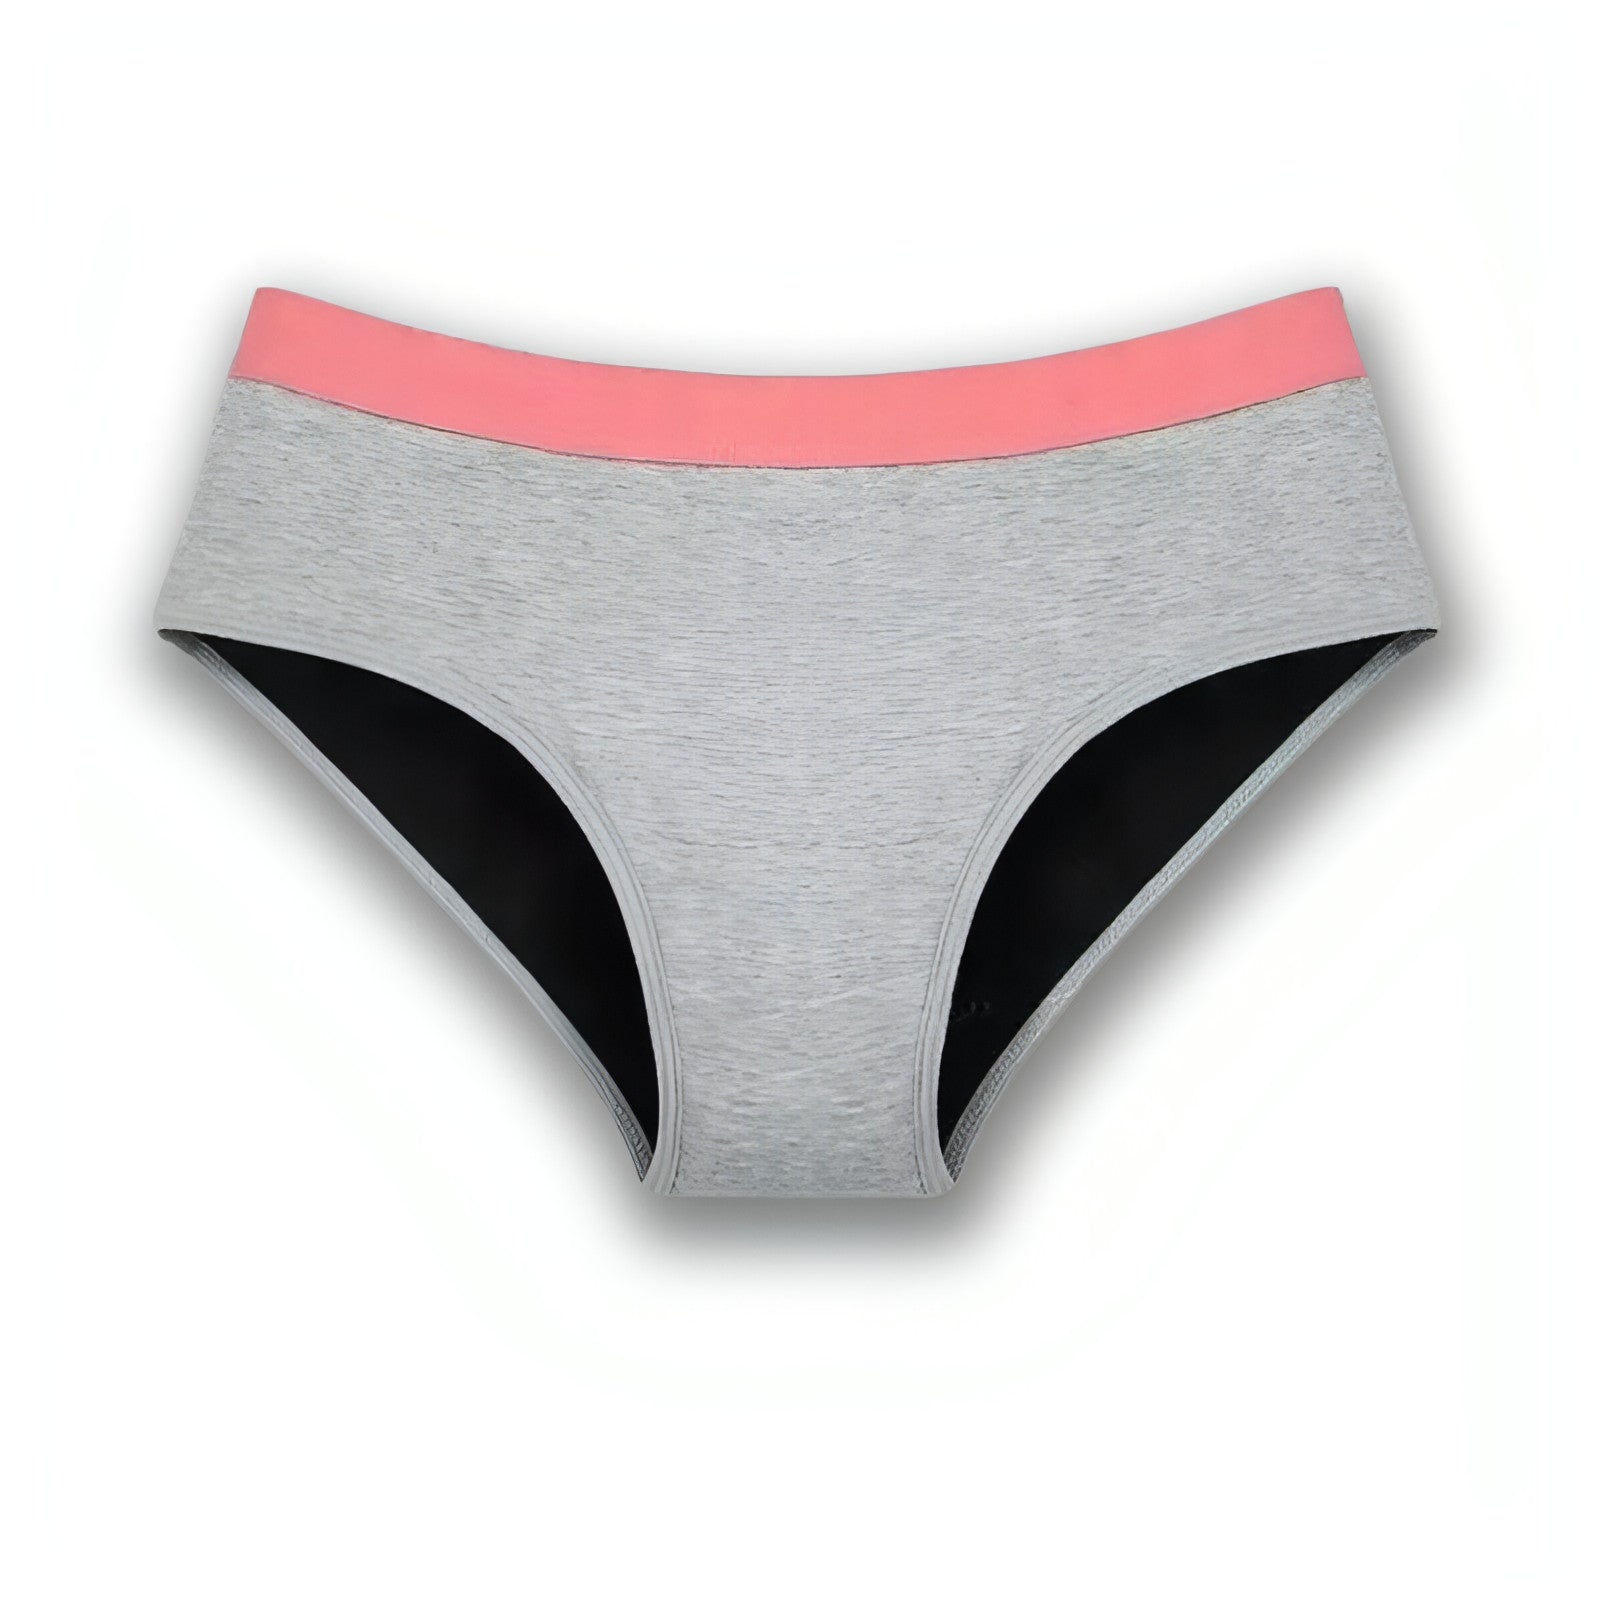 Thinx Teen Bikini Period Underwear - L